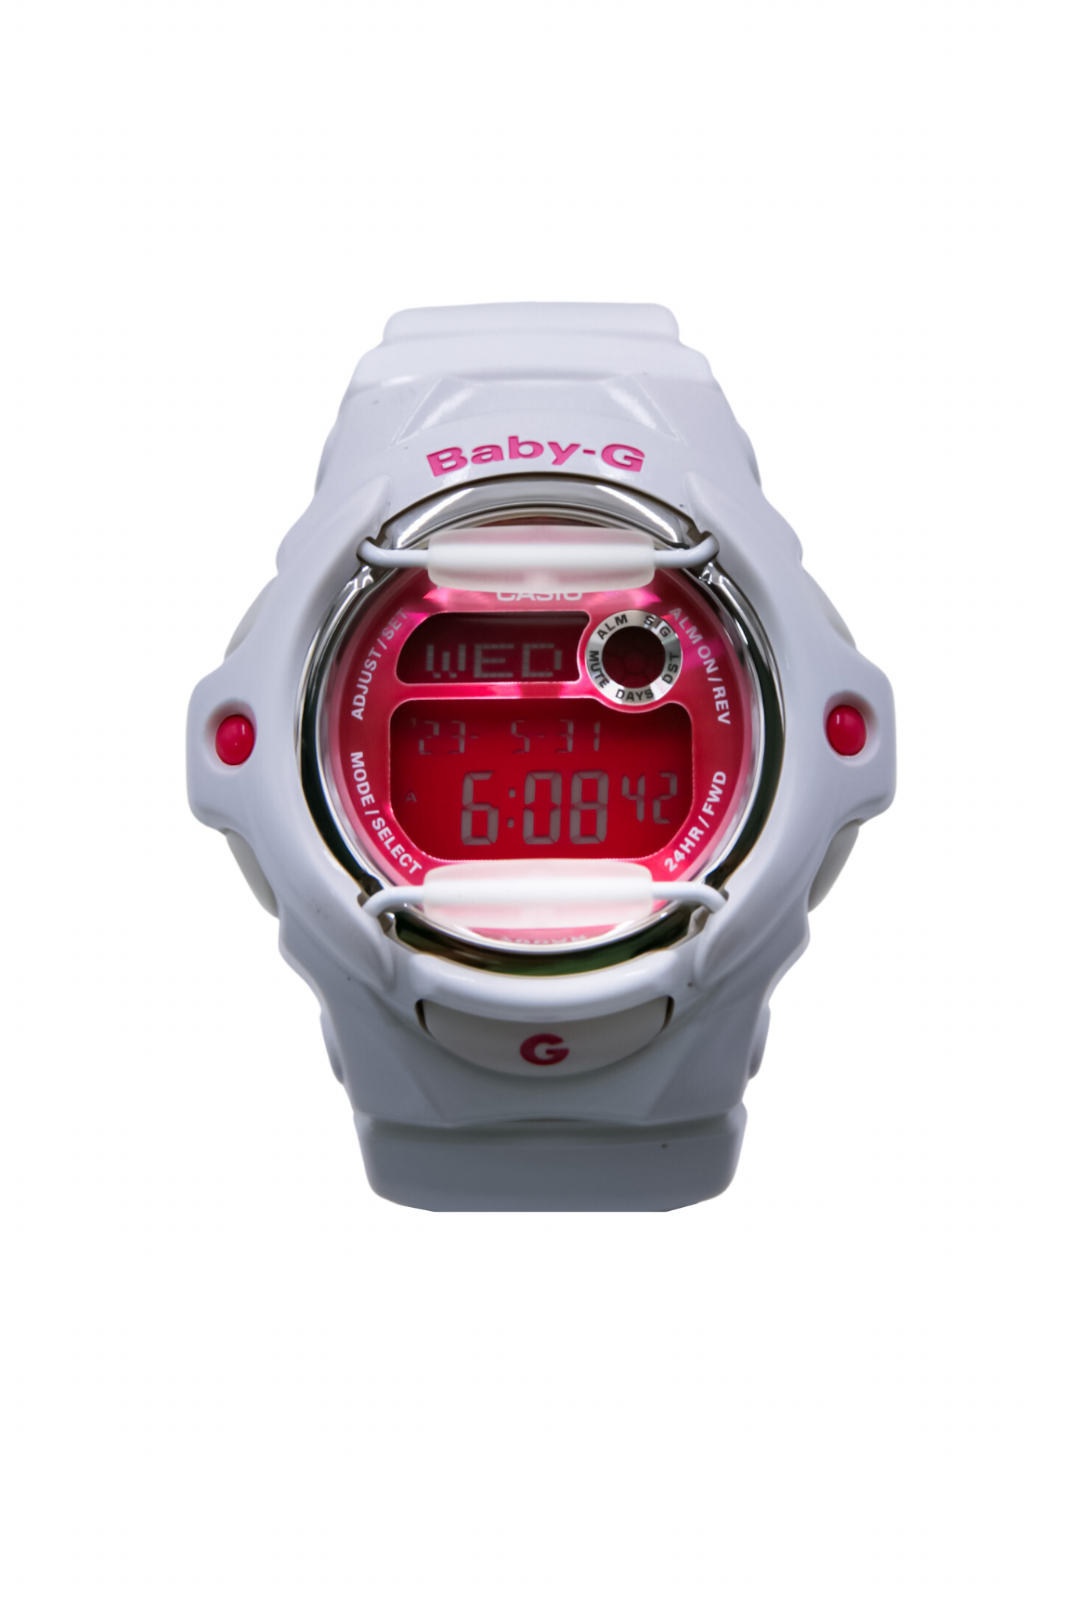 Casio Baby-G Ladies Watch BG169R-7D - 079767470258